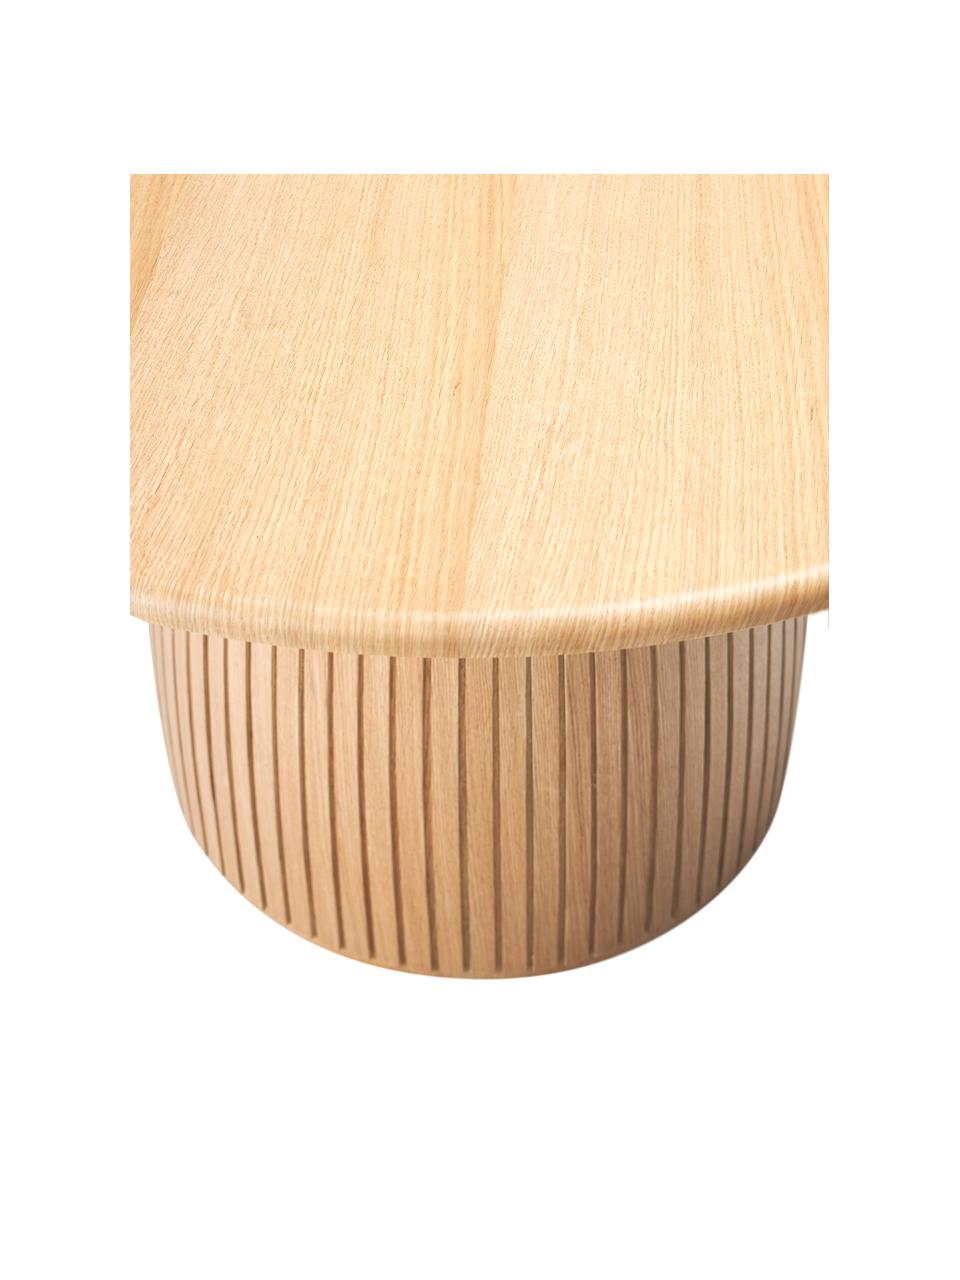 Runder Esstisch Nelly mit Rillenstruktur, in verschiedenen Grössen, Eichenholzfurnier, mit Mitteldichte Holzfaserplatte (MDF)

Dieses Produkt wird aus nachhaltig gewonnenem, FSC®-zertifiziertem Holz gefertigt., Eichenholz, Ø 140 cm